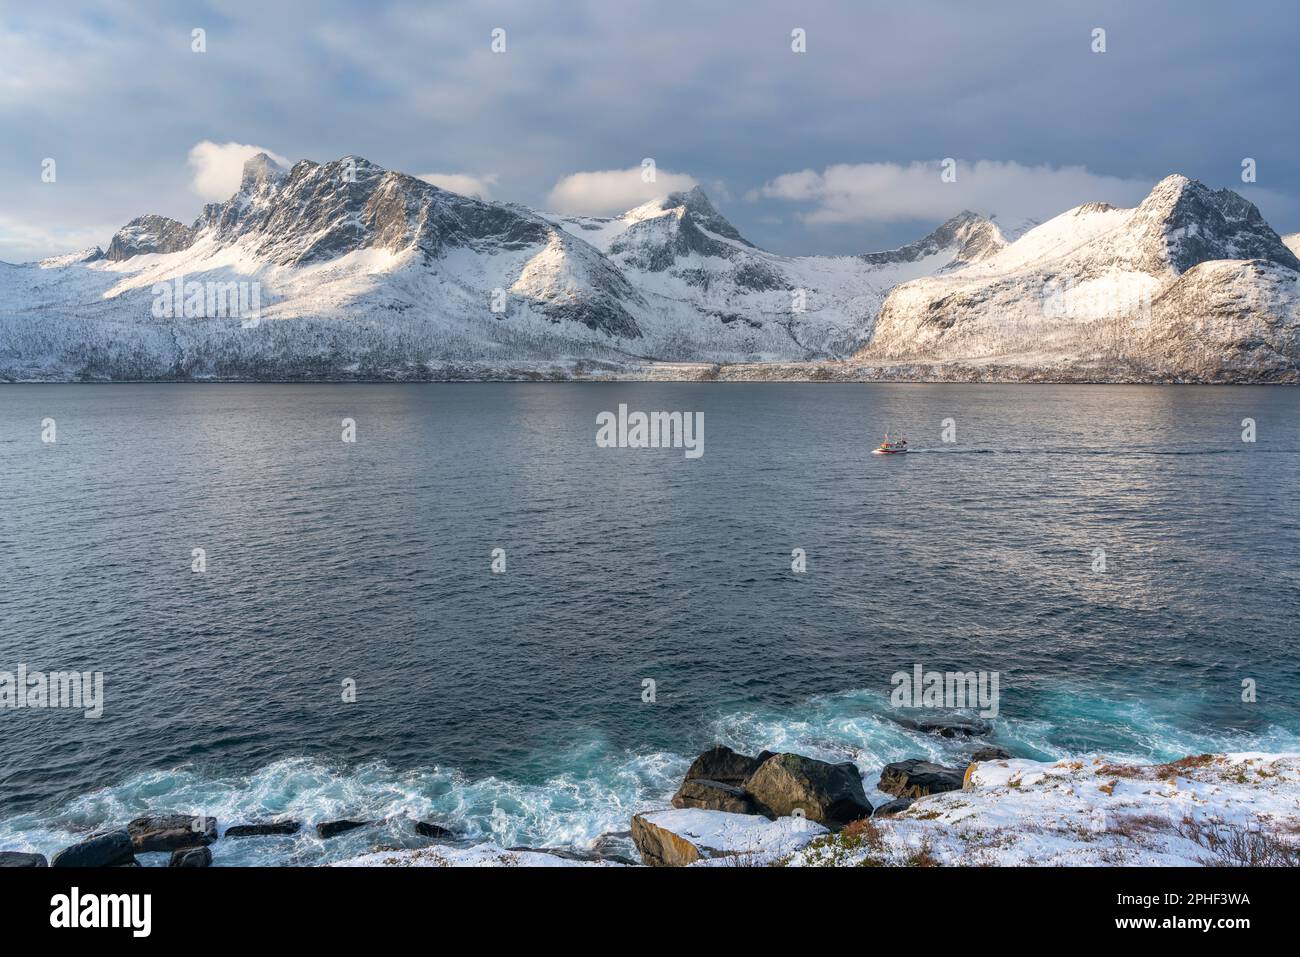 Fischer am Morgen, Schiff im Øyfjorden, mit den schneebedeckten Bergen von Senja, genannt Segla, Kongan und Skultran im Hintergrund. Norwegen Stock Photo